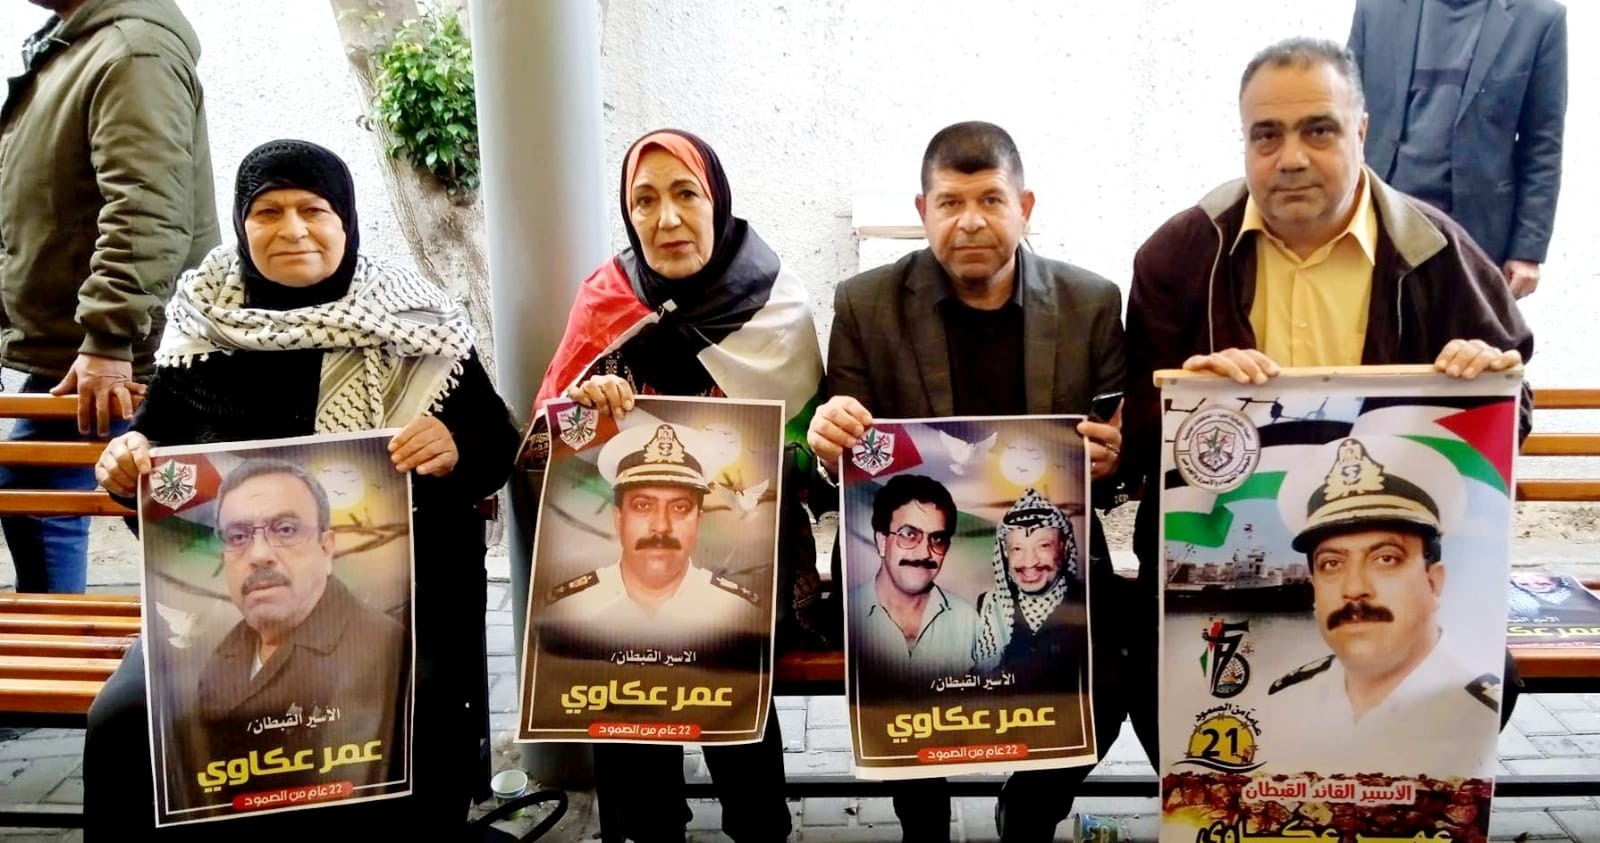 التجمع الفلسطيني للوطن و الشتات يشارك في الوقفة بإسترداد جثامين الشهداء المحتجزة لدى الاحتلال 6.jpg